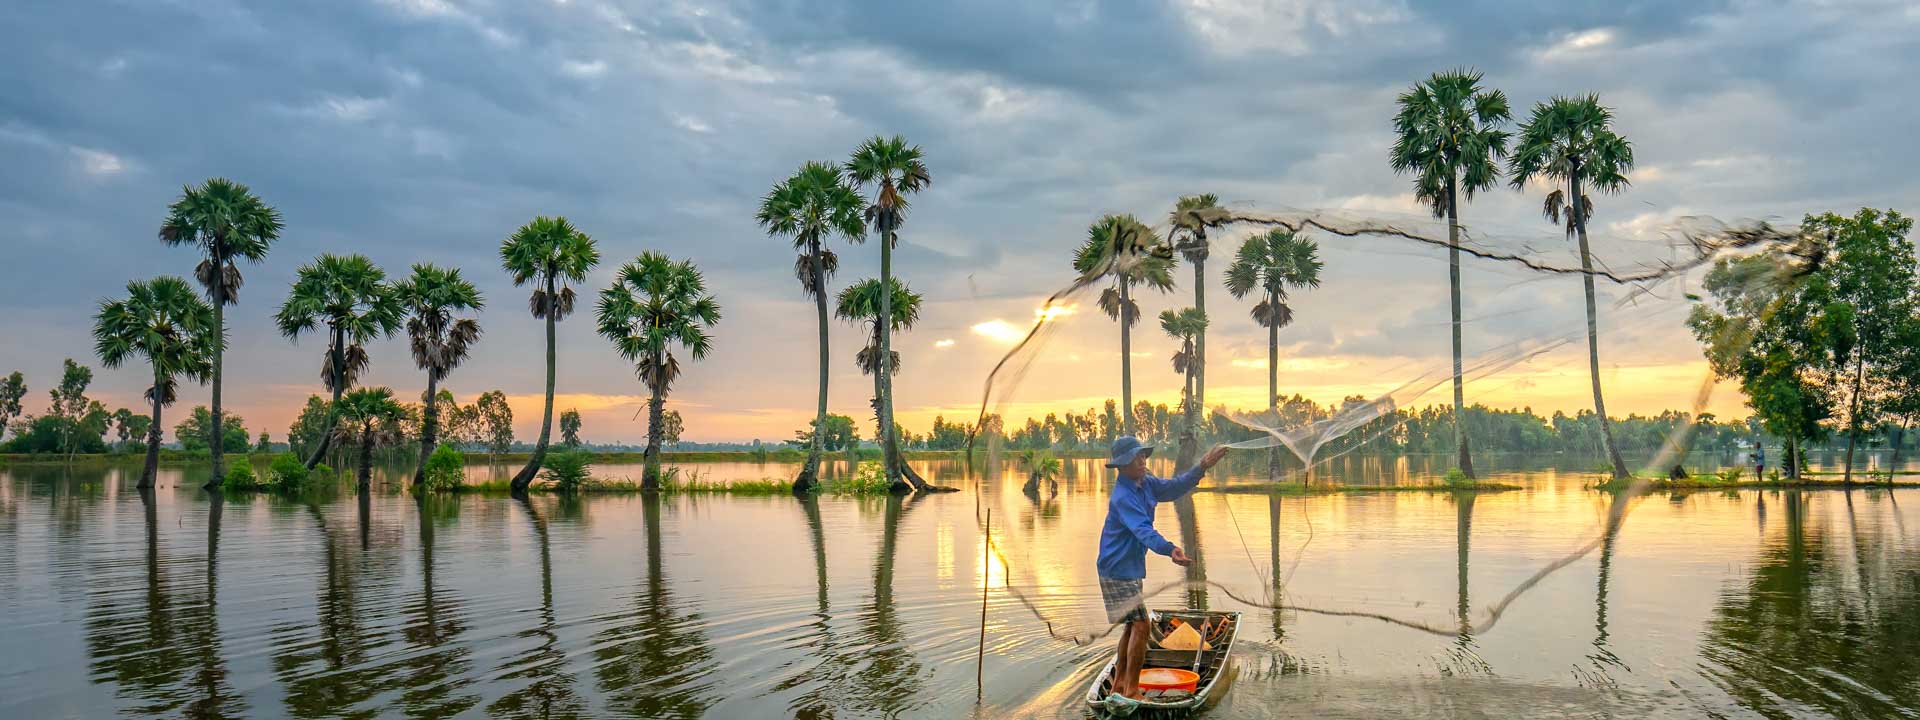 Scoperta dei patrimoni in Vietnam Cambogia 21 giorni